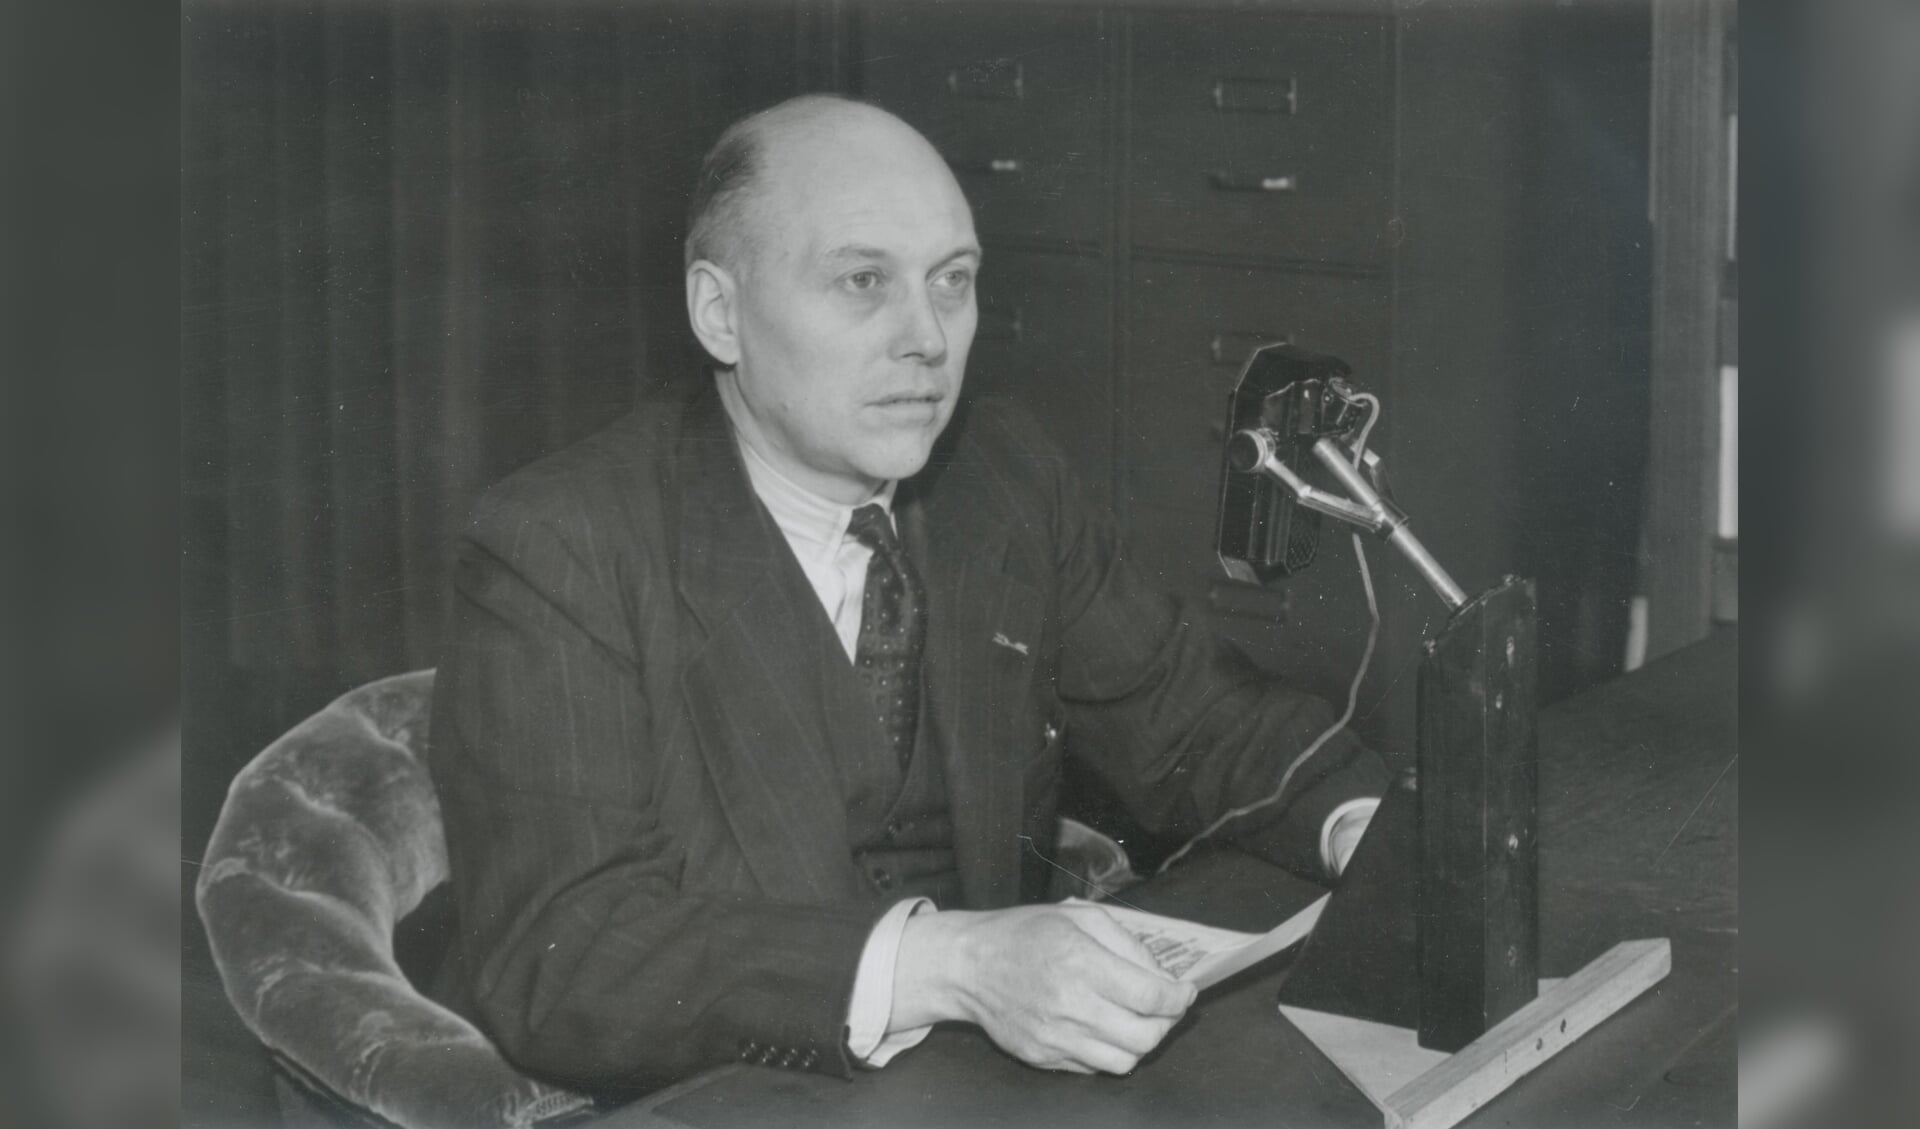 De Delftse hoogleraar Willem Schermerhorn spreekt na zijn aantreden als minister-president het land toe, 1945 (Foto: Van der Reijken, Stadsarchief Delft)